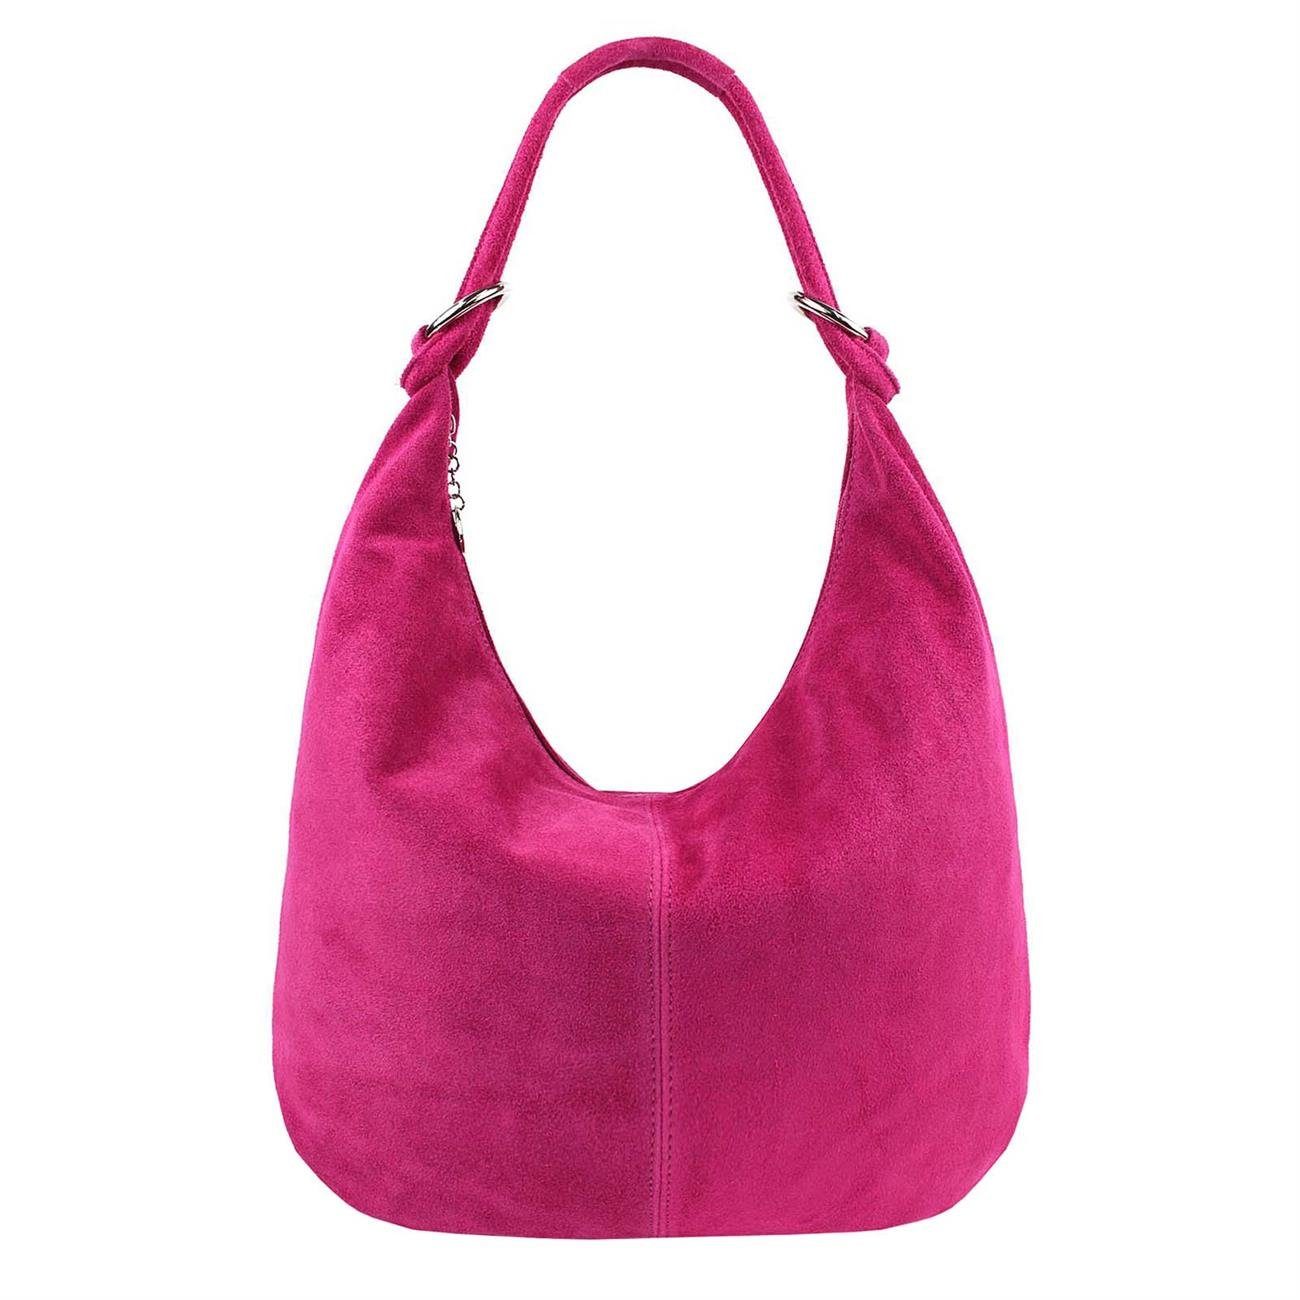 ITALYSHOP24 Schultertasche Made in Italy Damen Leder Tasche Schultertasche, ein Leichtgewicht, als Handtasche, Henkeltasche tragbar